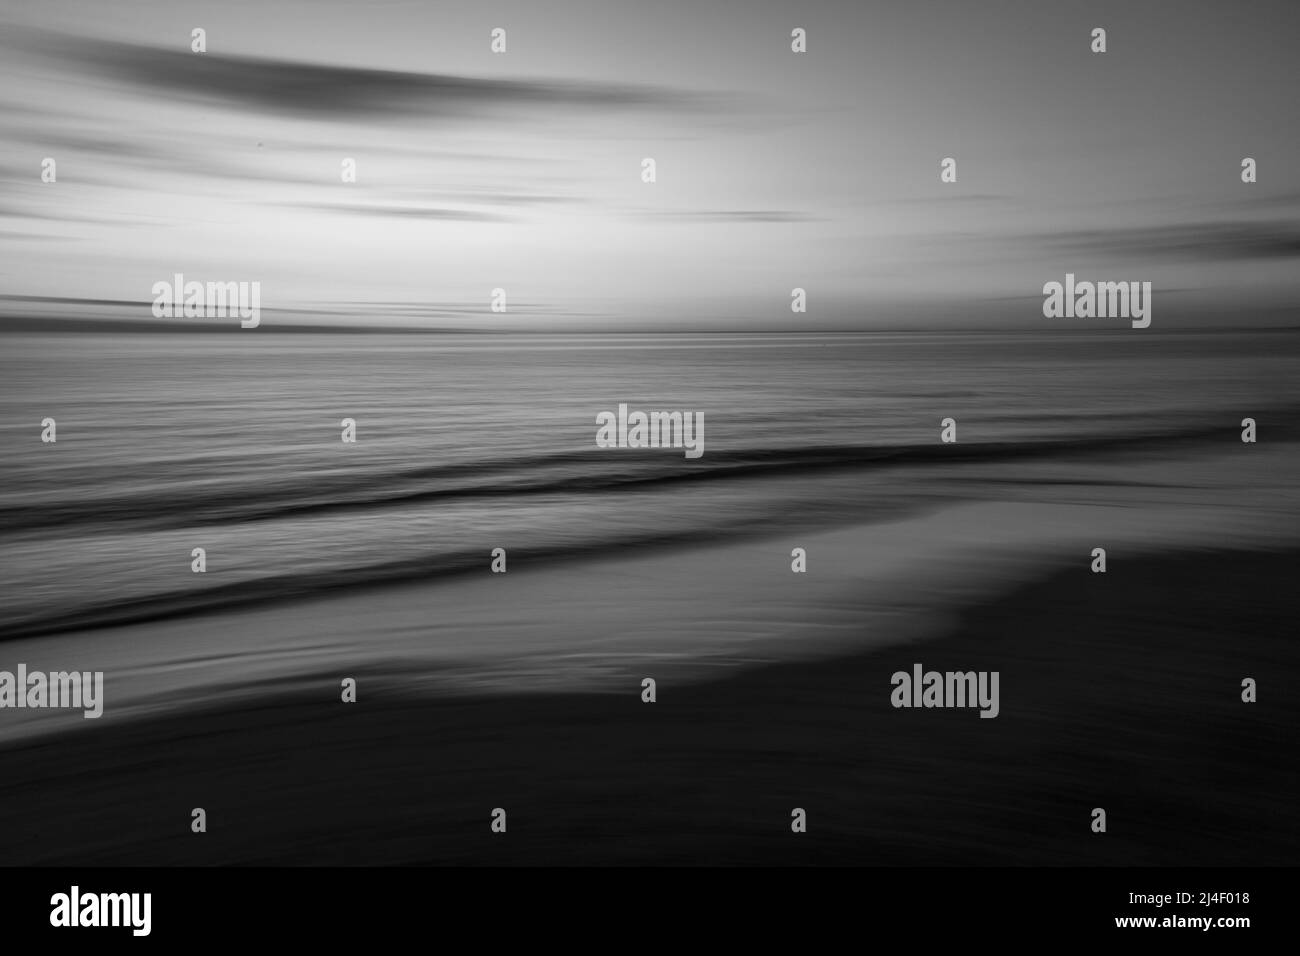 Image en noir et blanc de la côte, vagues, flou intentionnel, longue exposition Banque D'Images